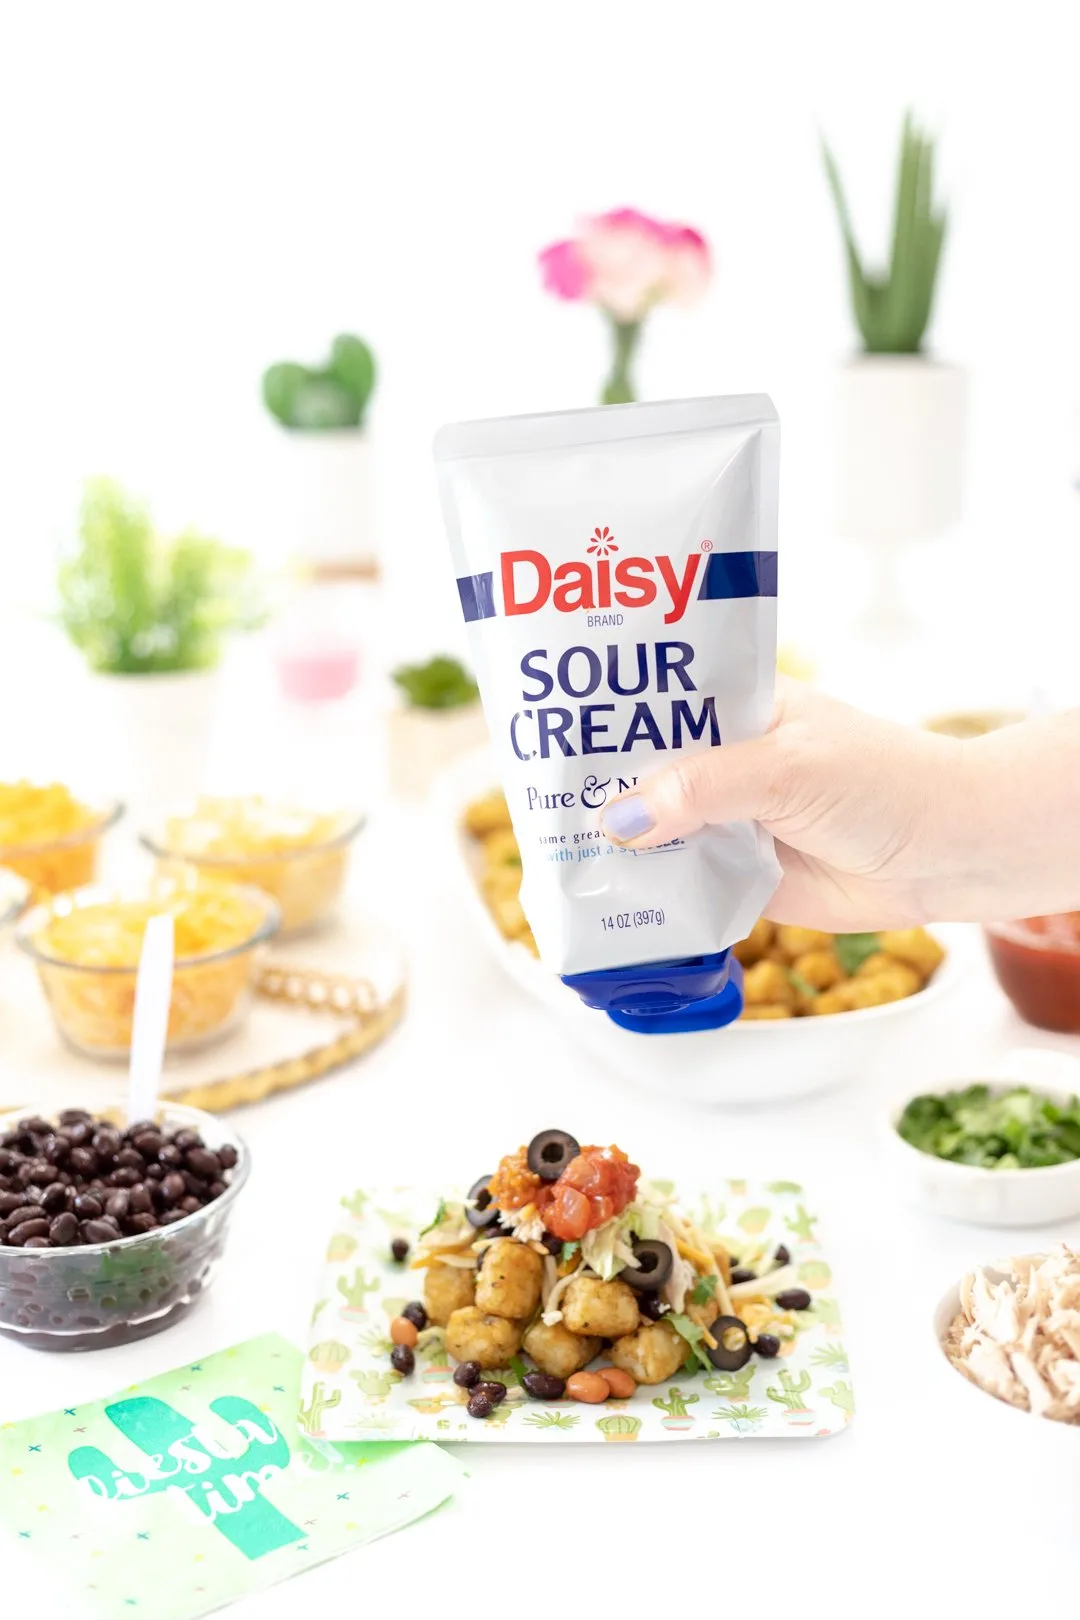 Daisy Sour Cream for totchos